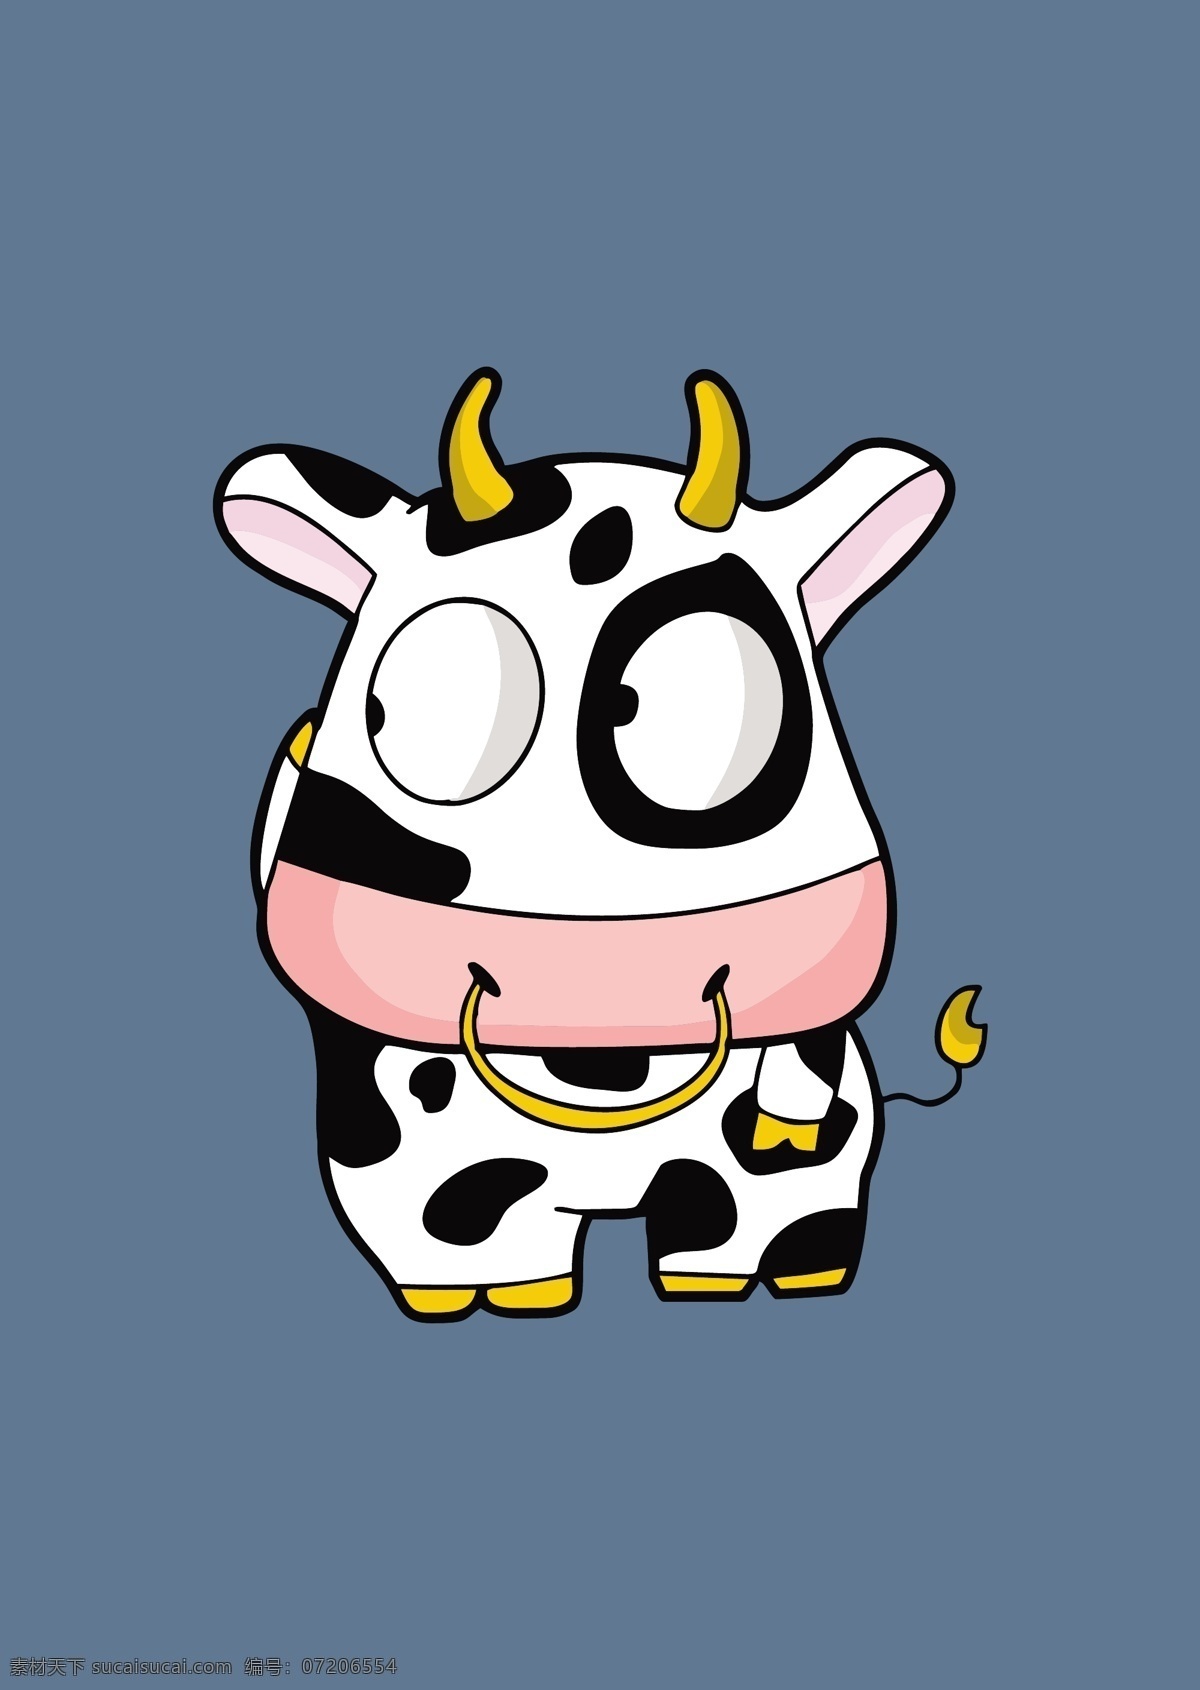 小奶牛图片 奶牛 卡通 动物 可爱 牛 童装矢量图案 动漫动画 动漫人物